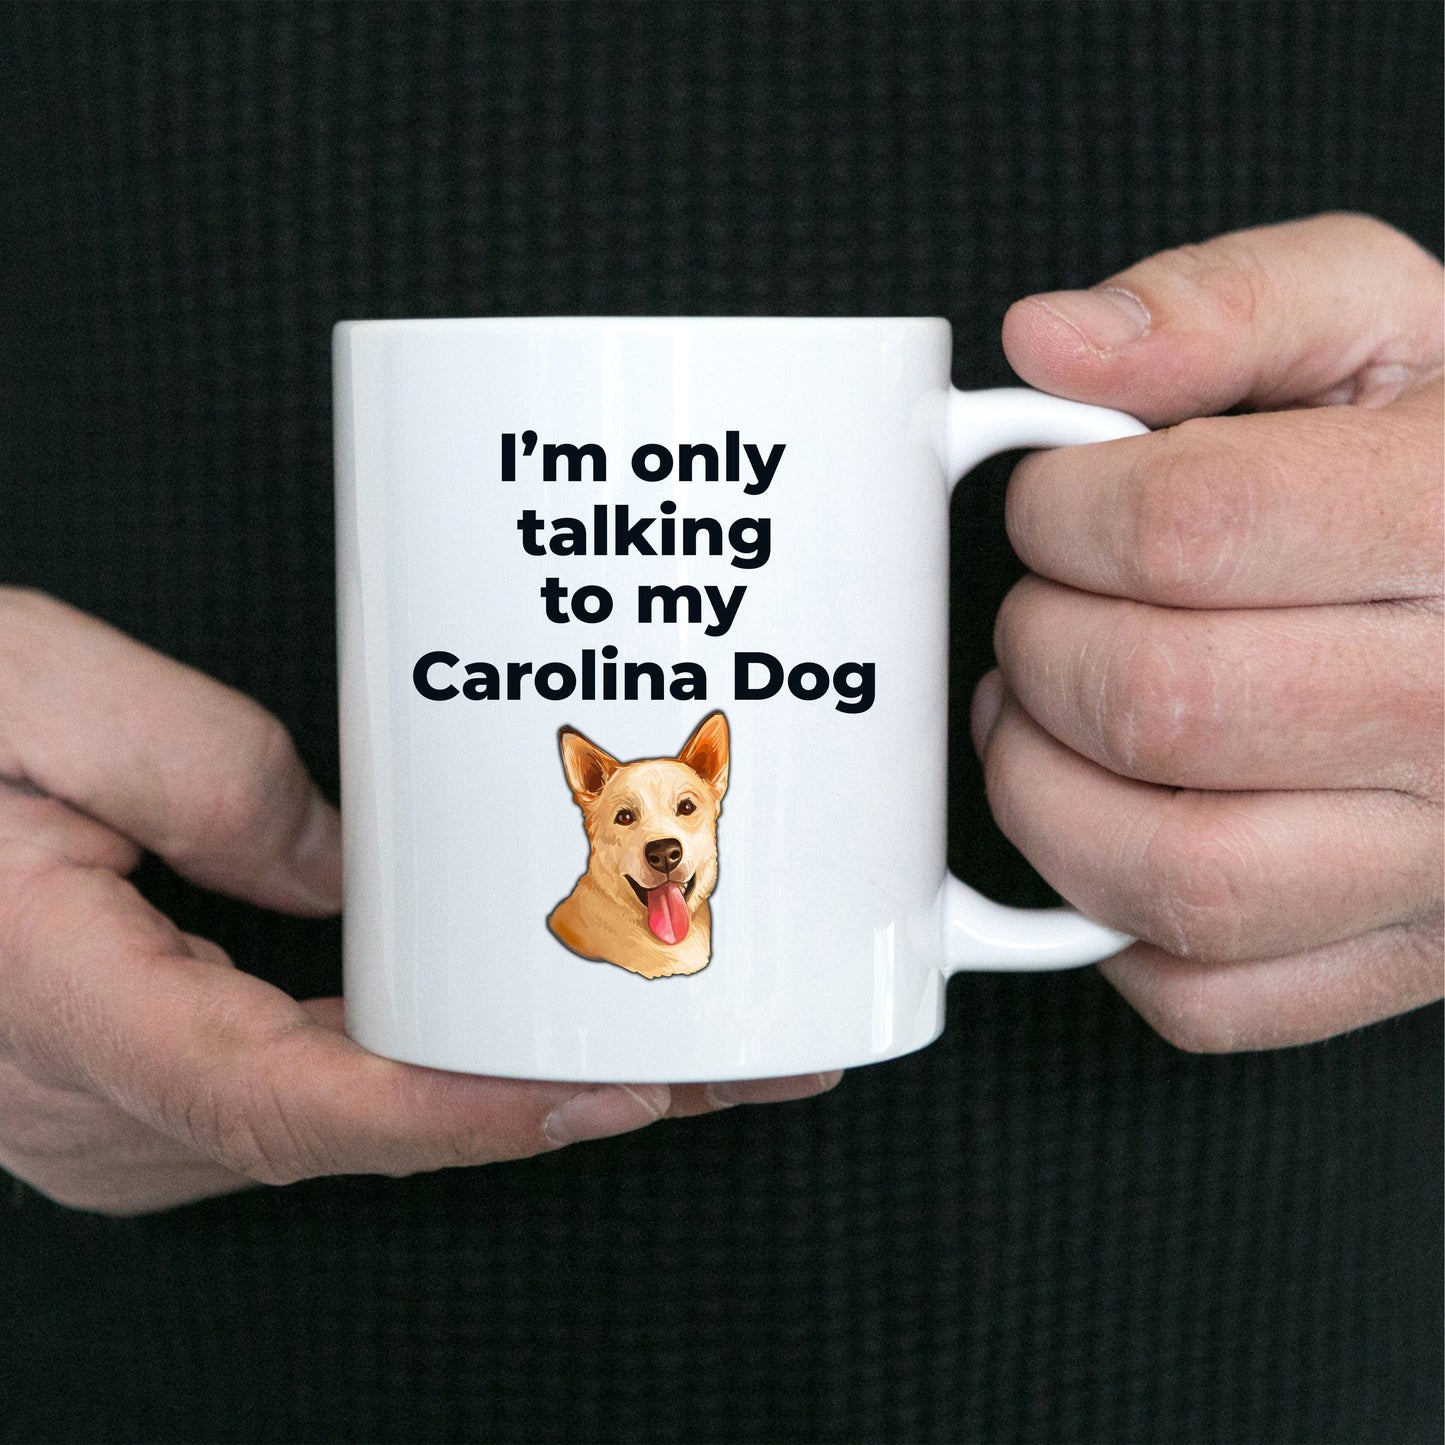 Carolina Funny Dog Coffee Mug - I'm only talking to my Carolina Dog